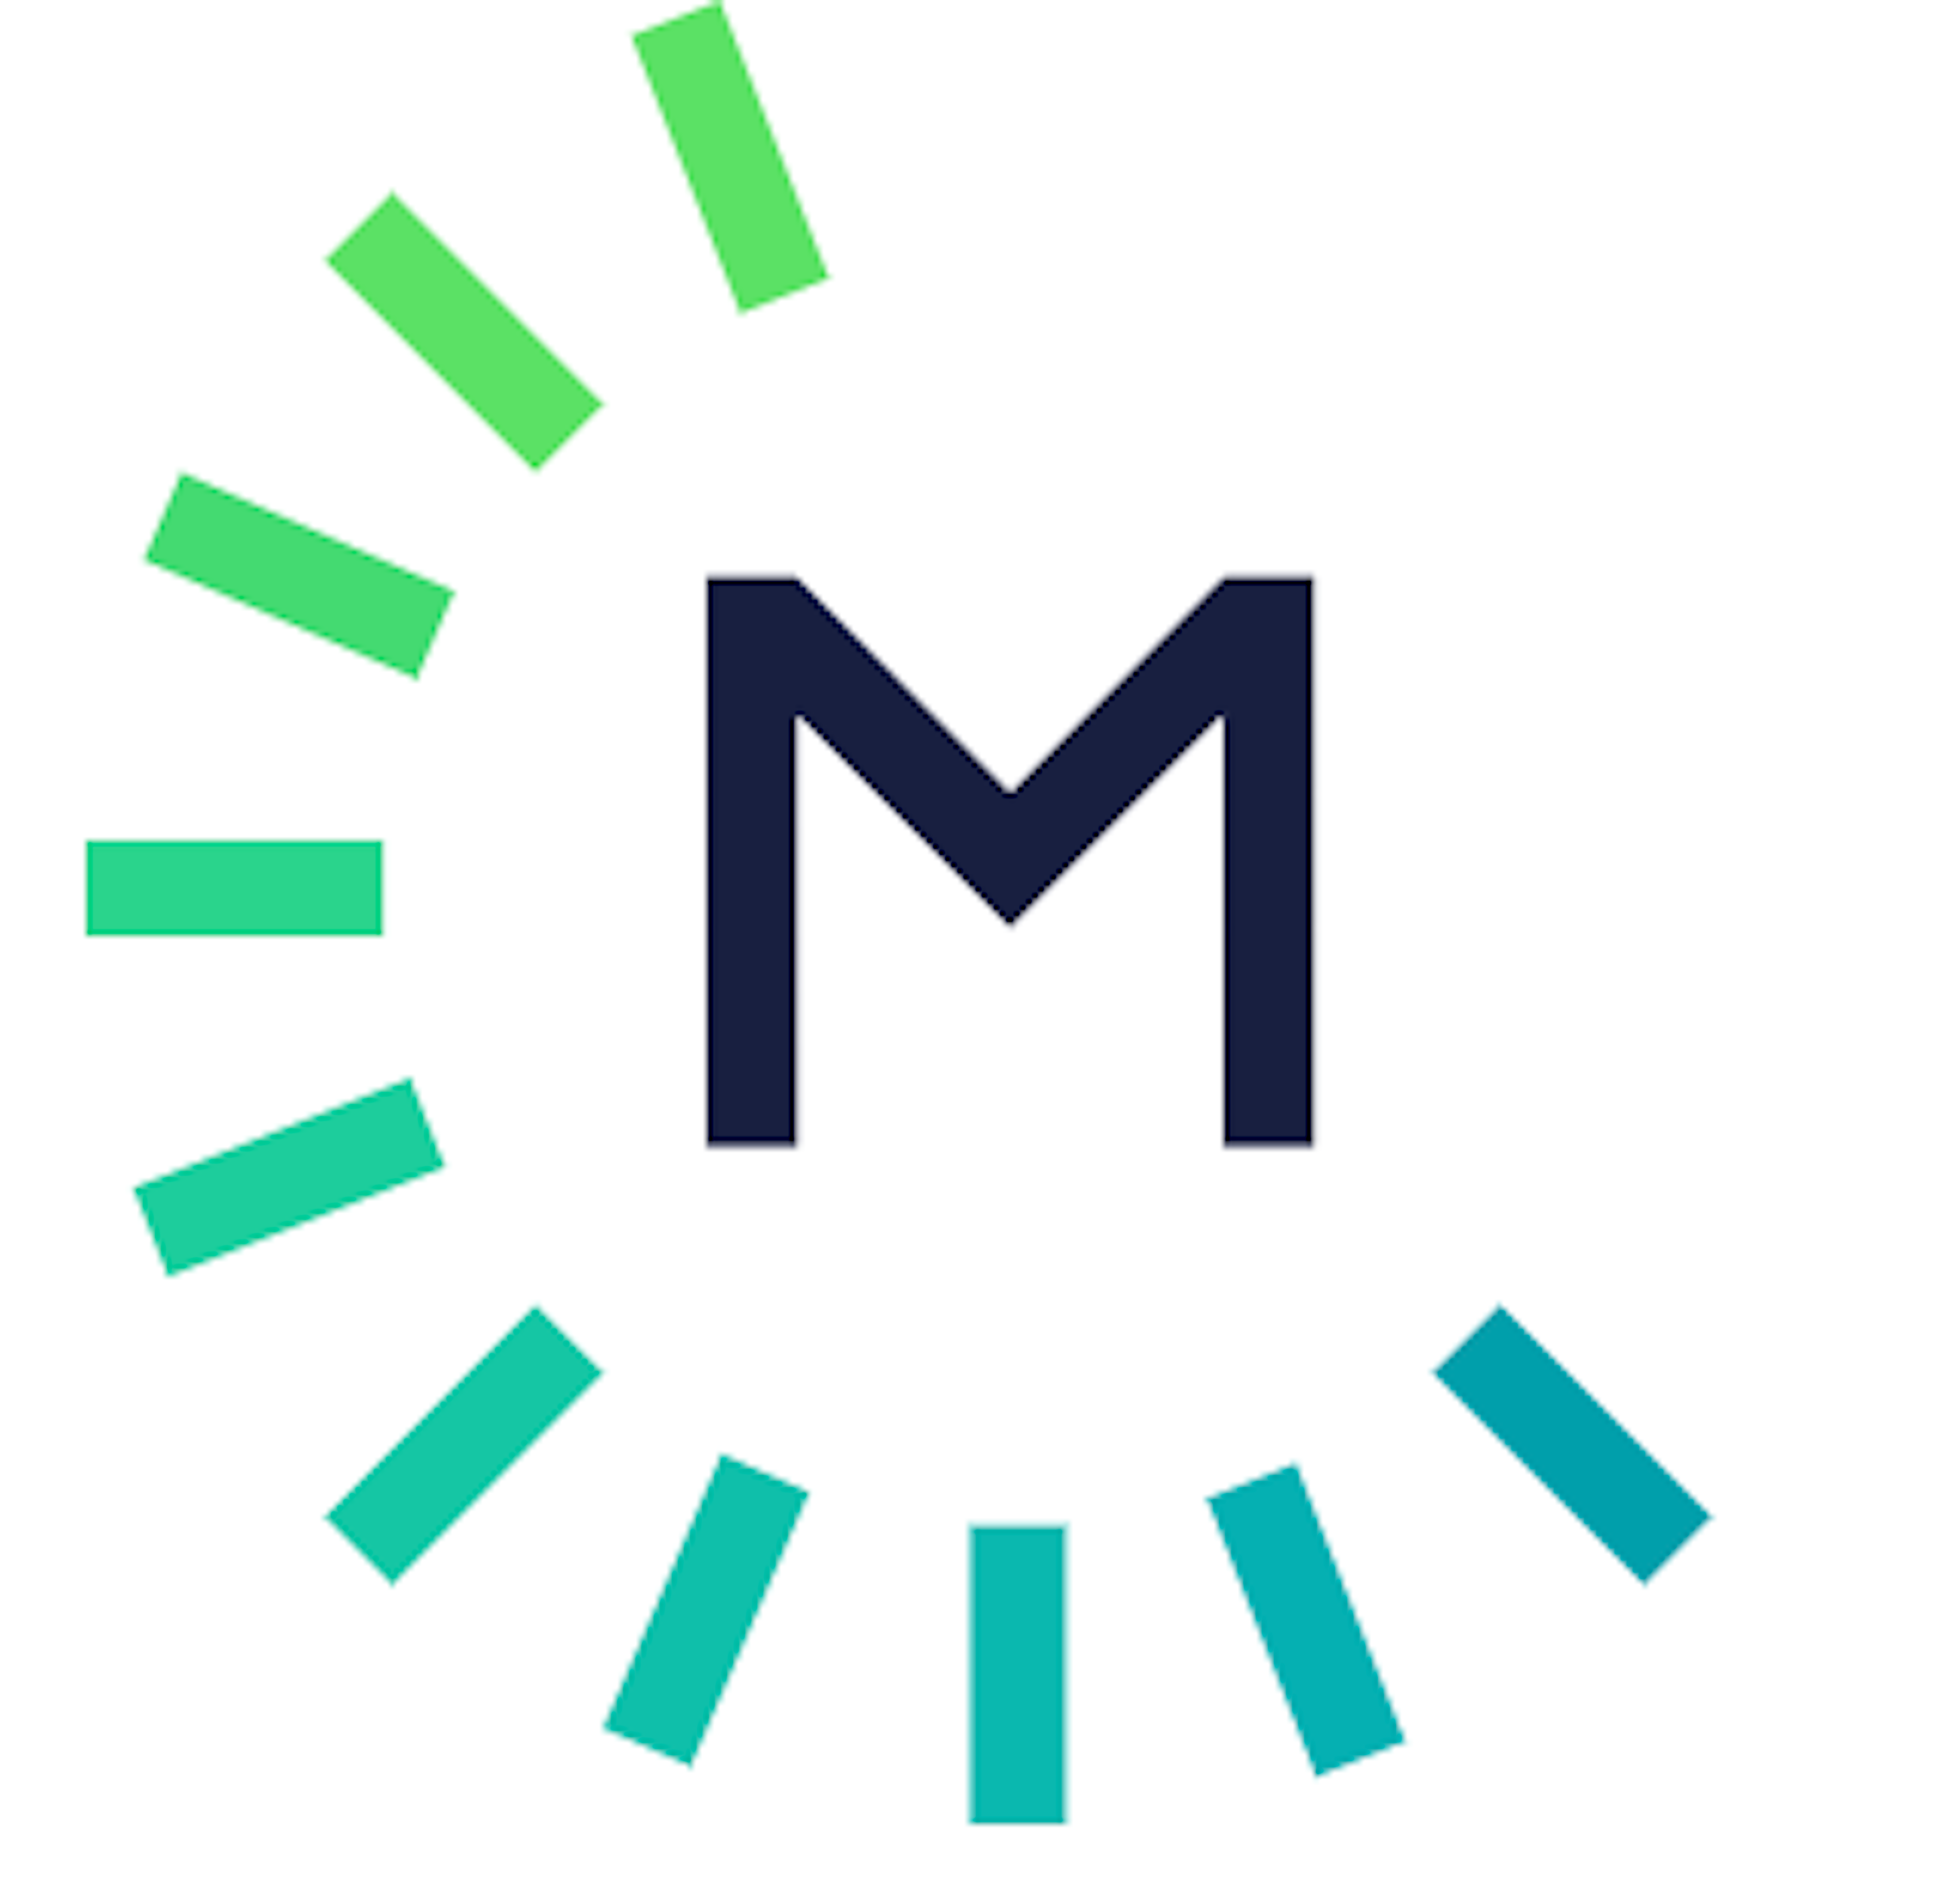 MediaHQ Logo